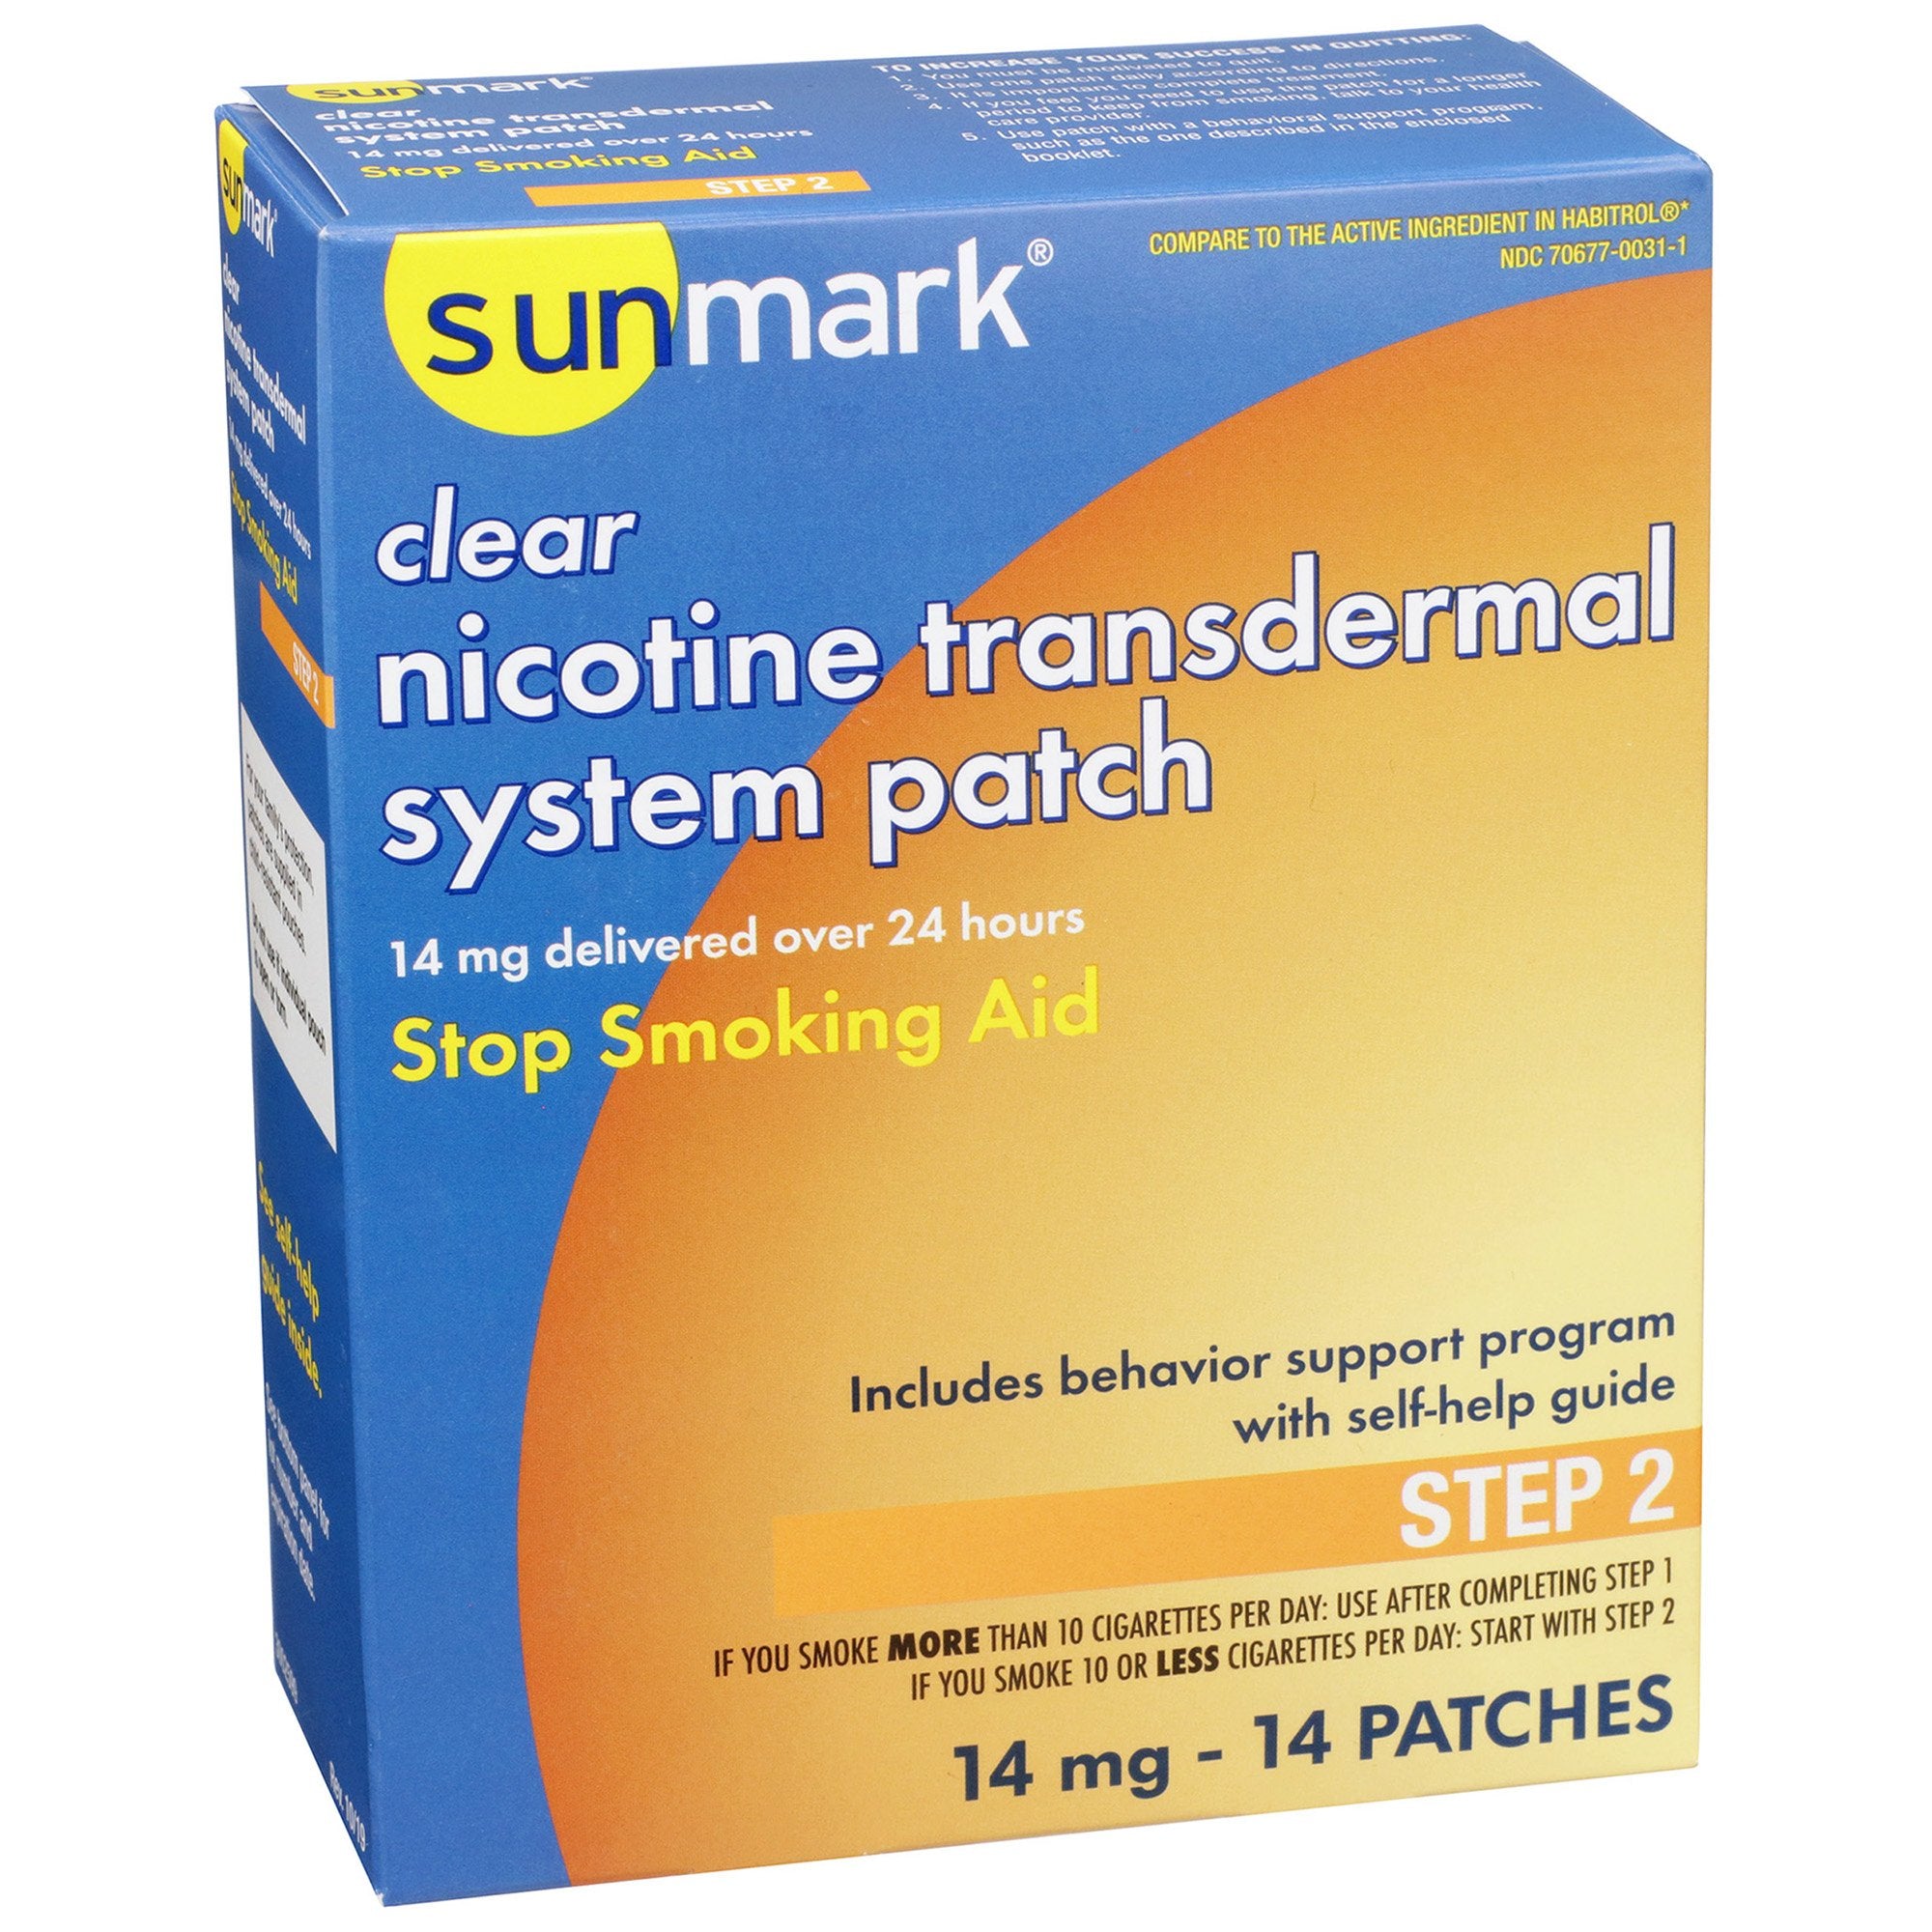 Stop Smoking Aid sunmark 14 mg Strength Transdermal Patch